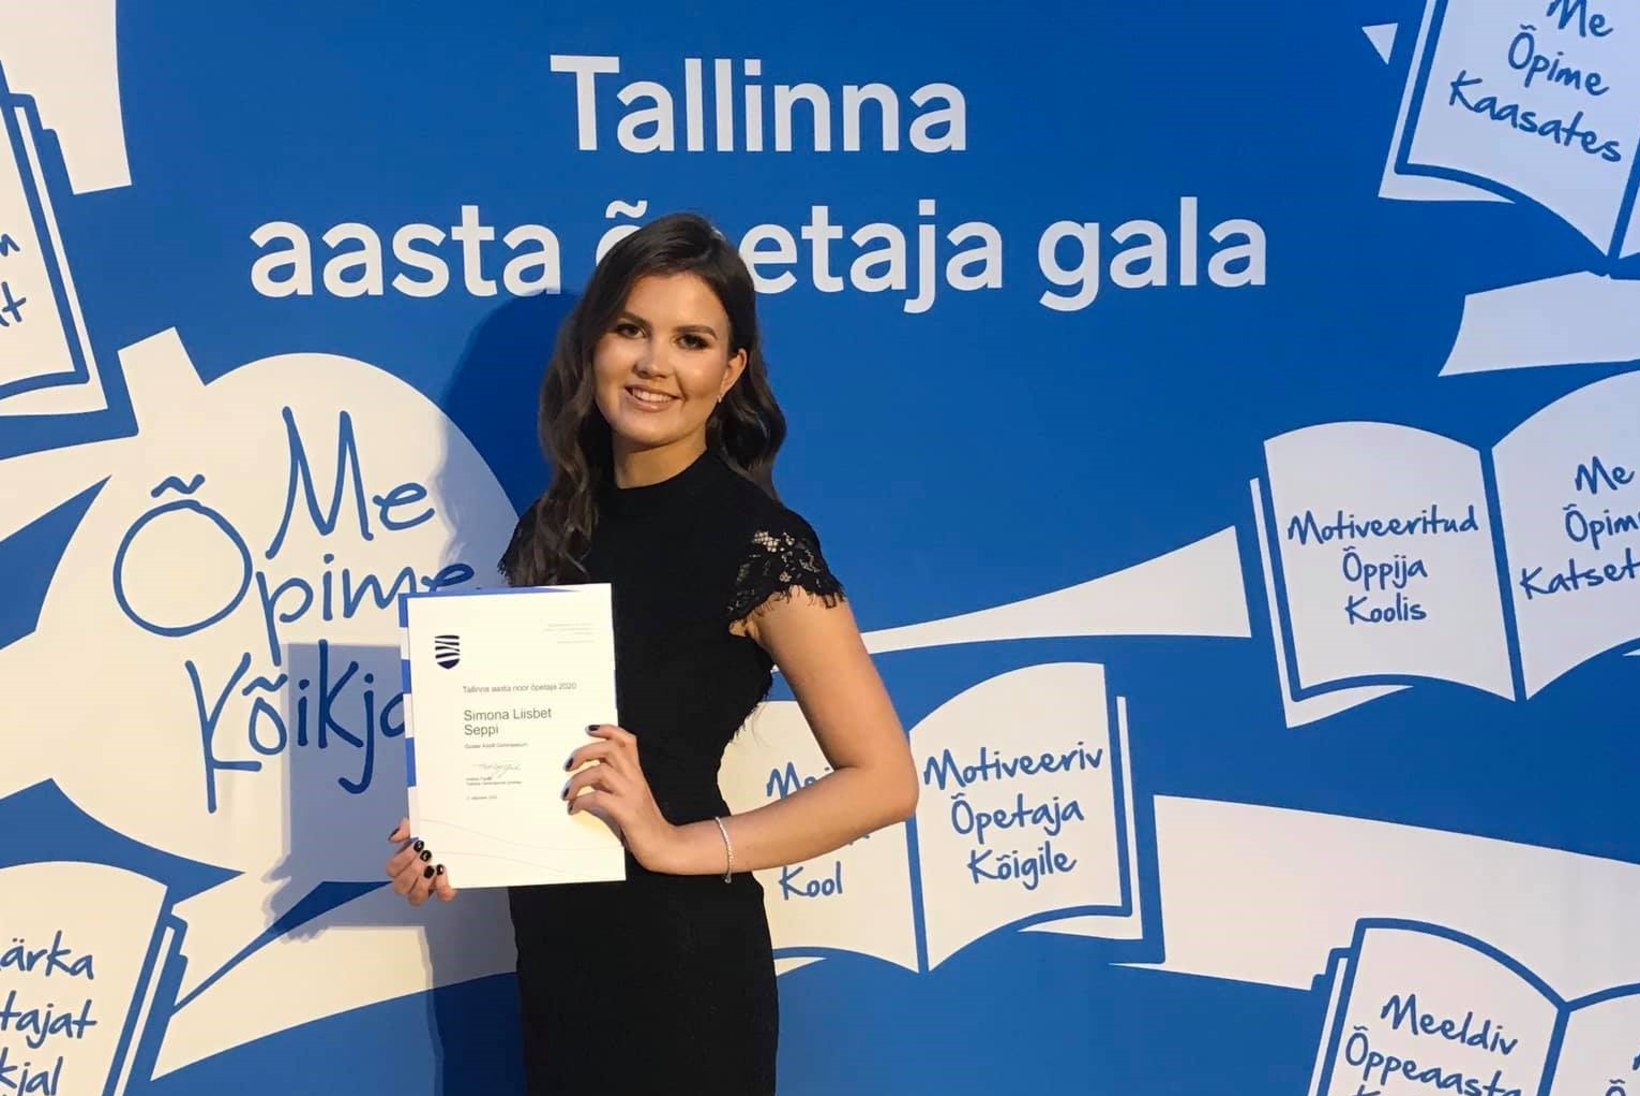 VIDEO | Tallinna noor õpetaja 2020 Simona Seppi: lapsed on päike igas minu päevas!